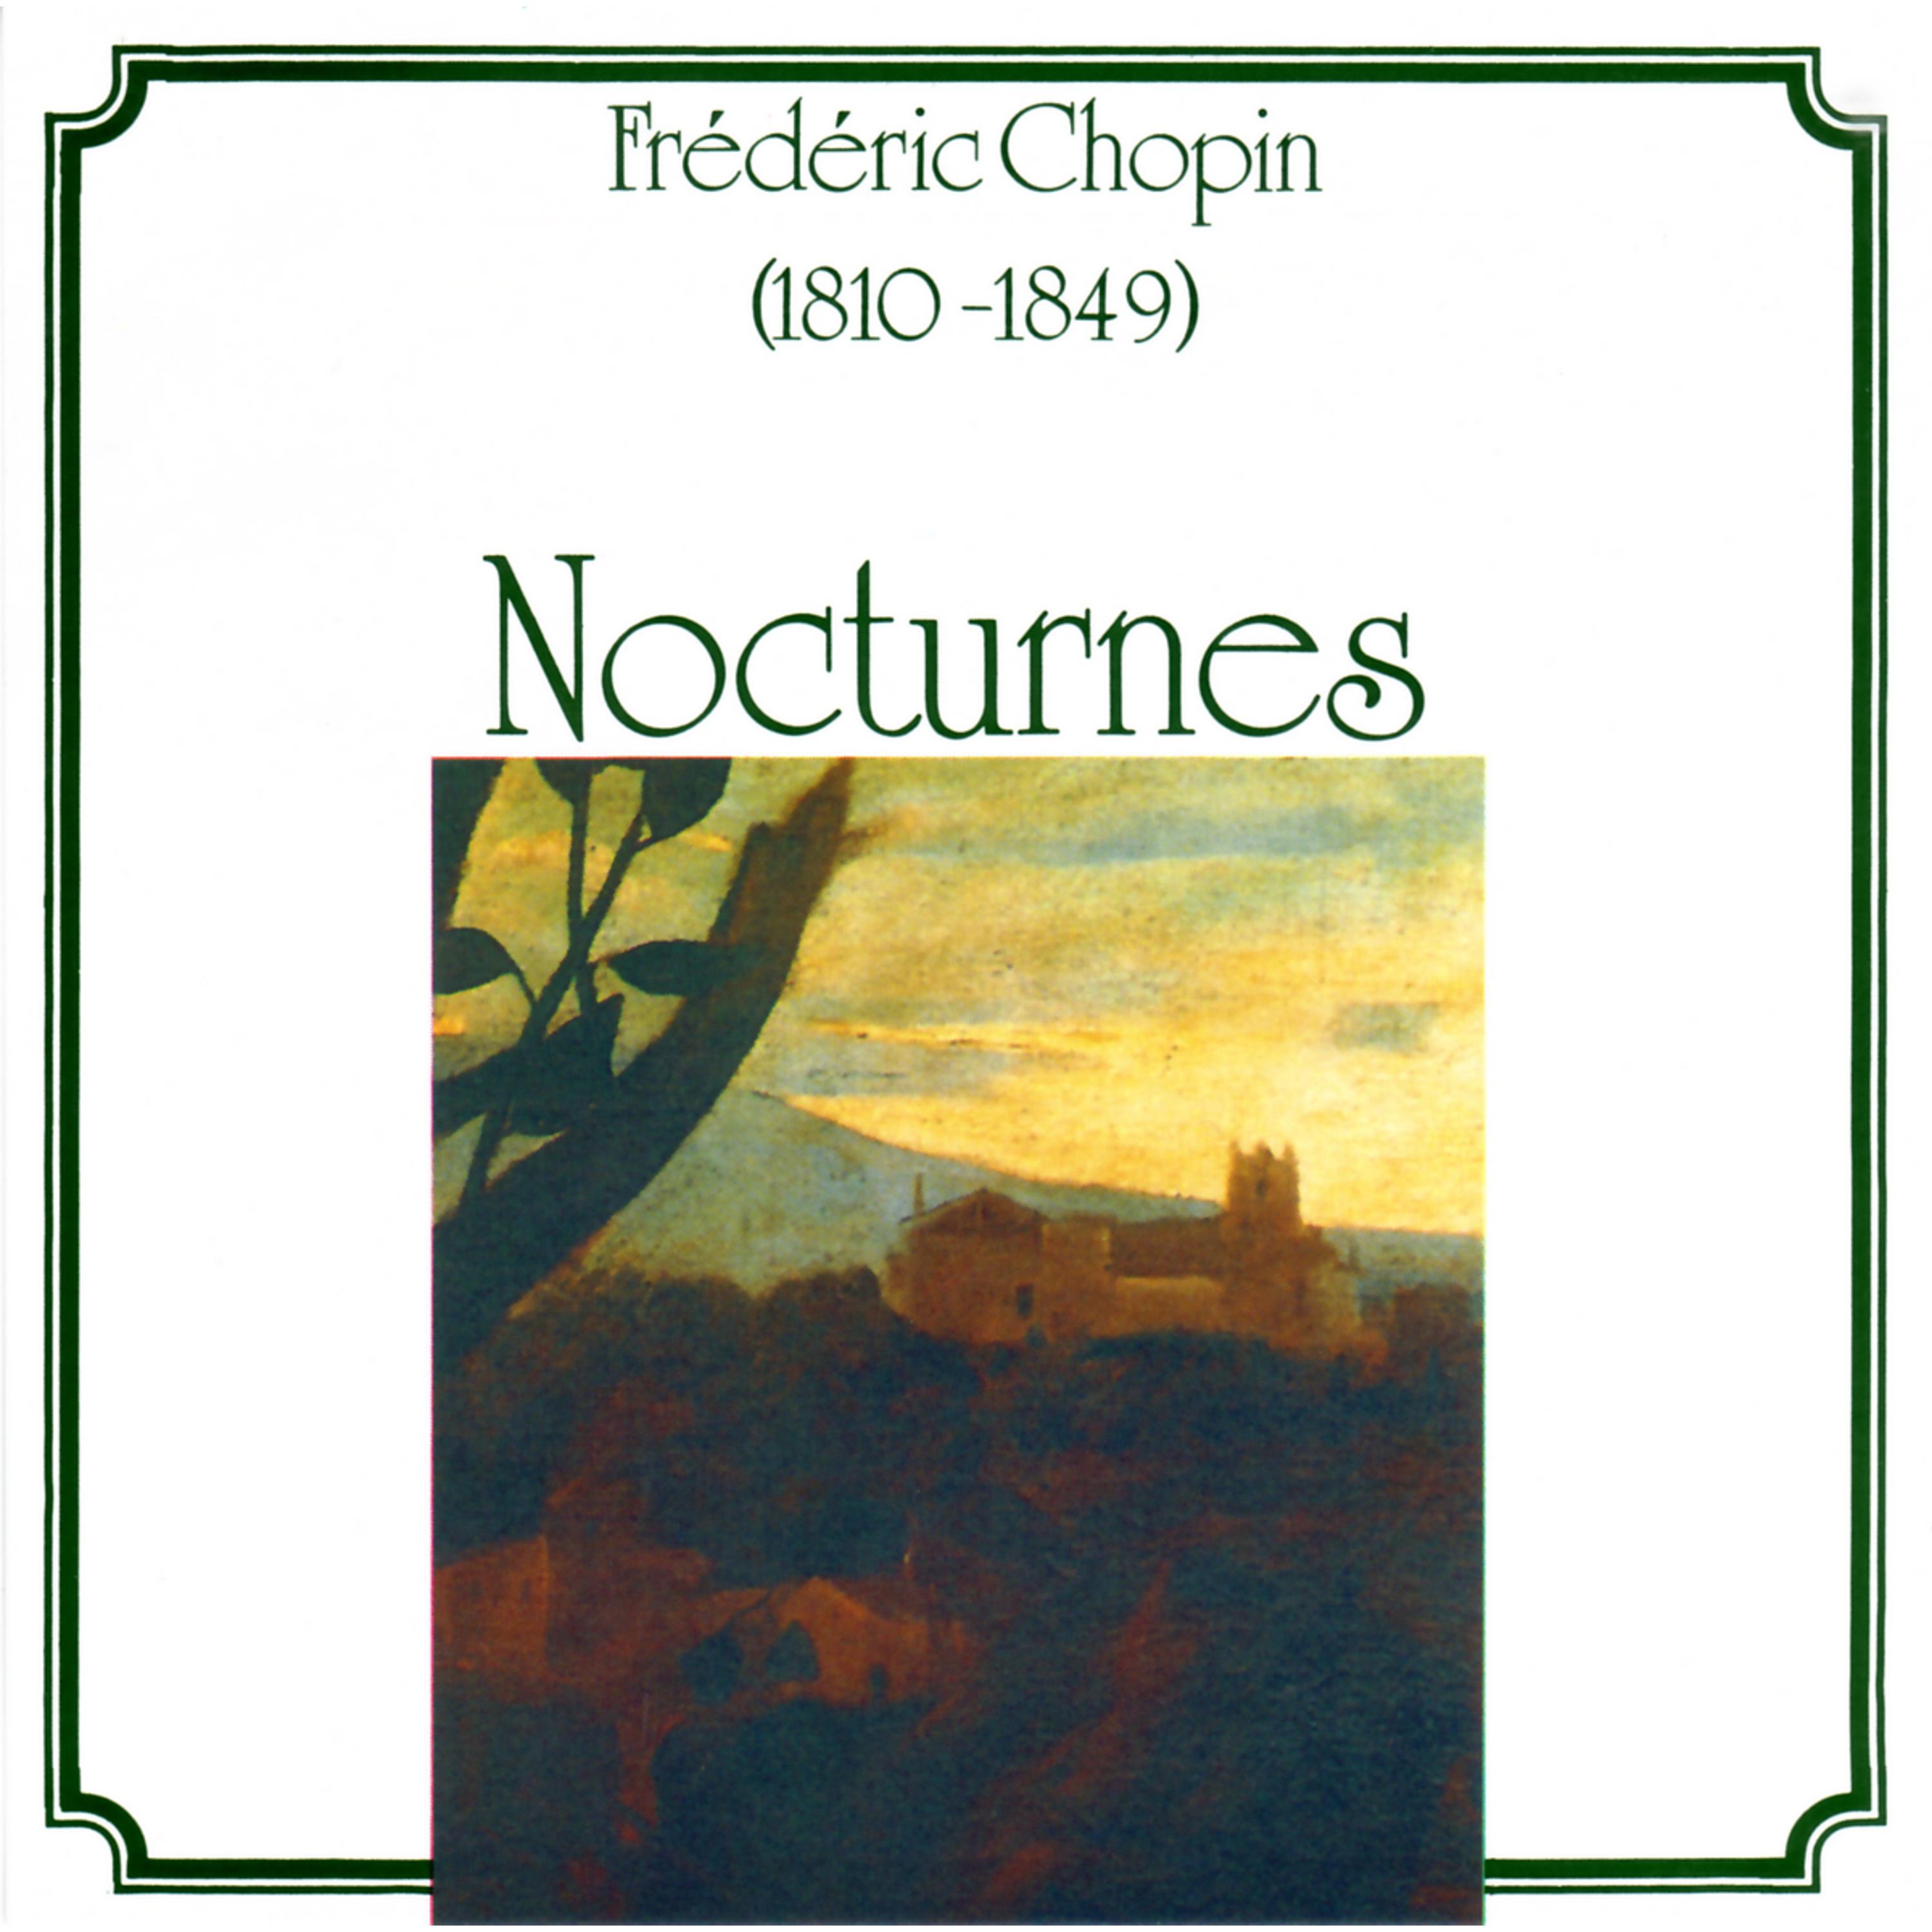 Fre de ric Chopin: Nocturnes